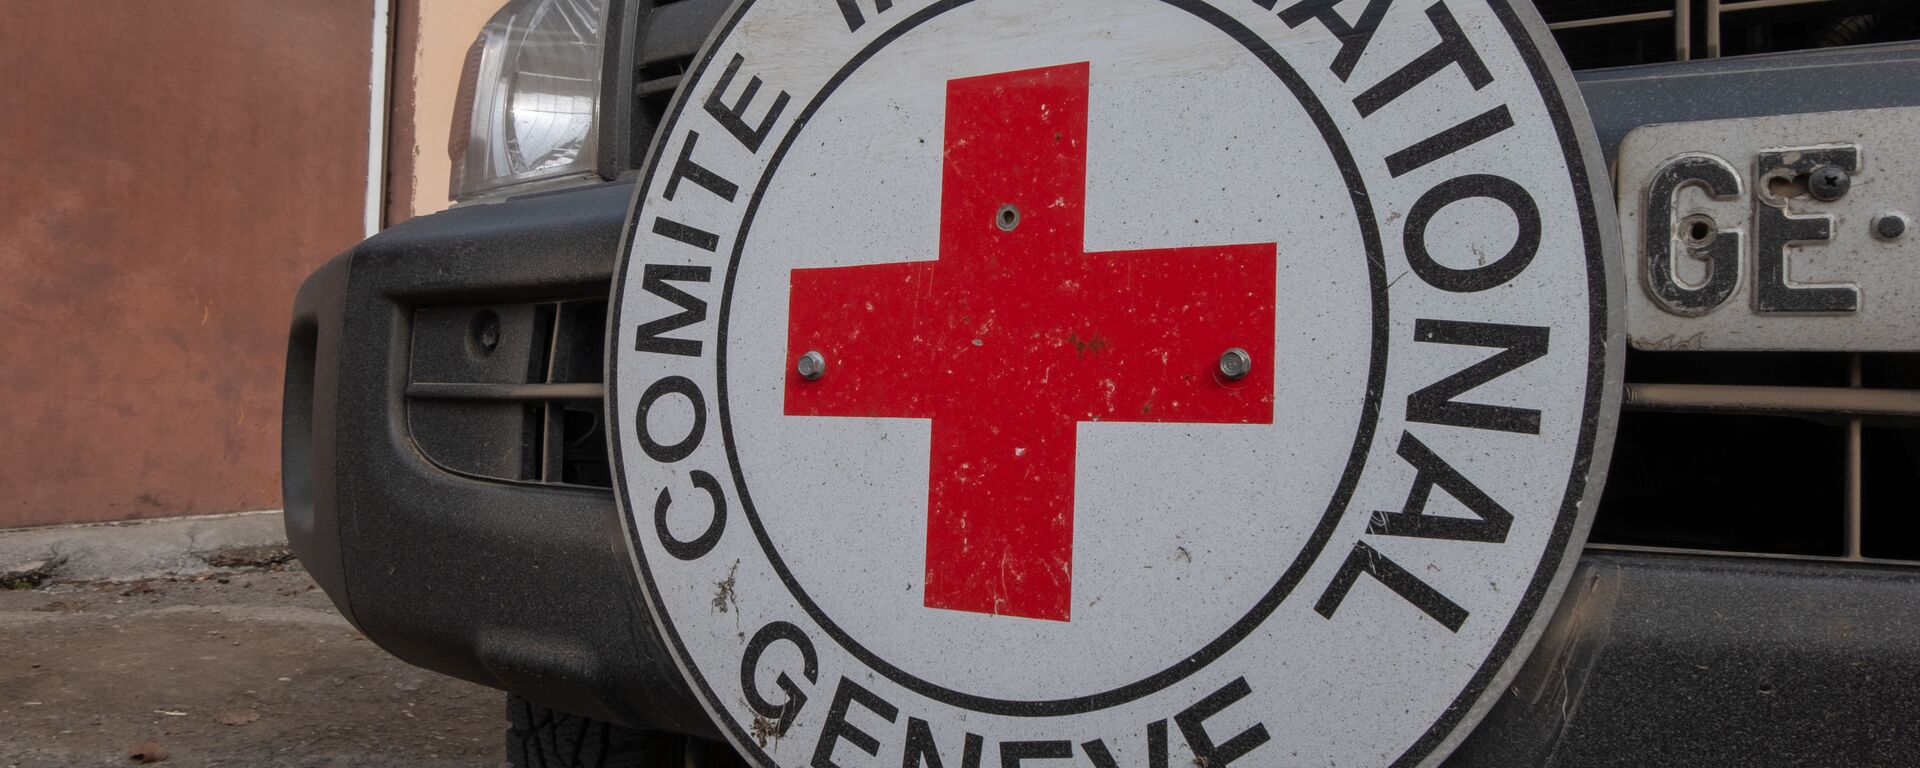 Xe cứu trợ của Hiệp Hội Chữ thập đỏ và Trăng lưỡi liềm đỏ quốc tế (ICRC) - Sputnik Việt Nam, 1920, 08.05.2021